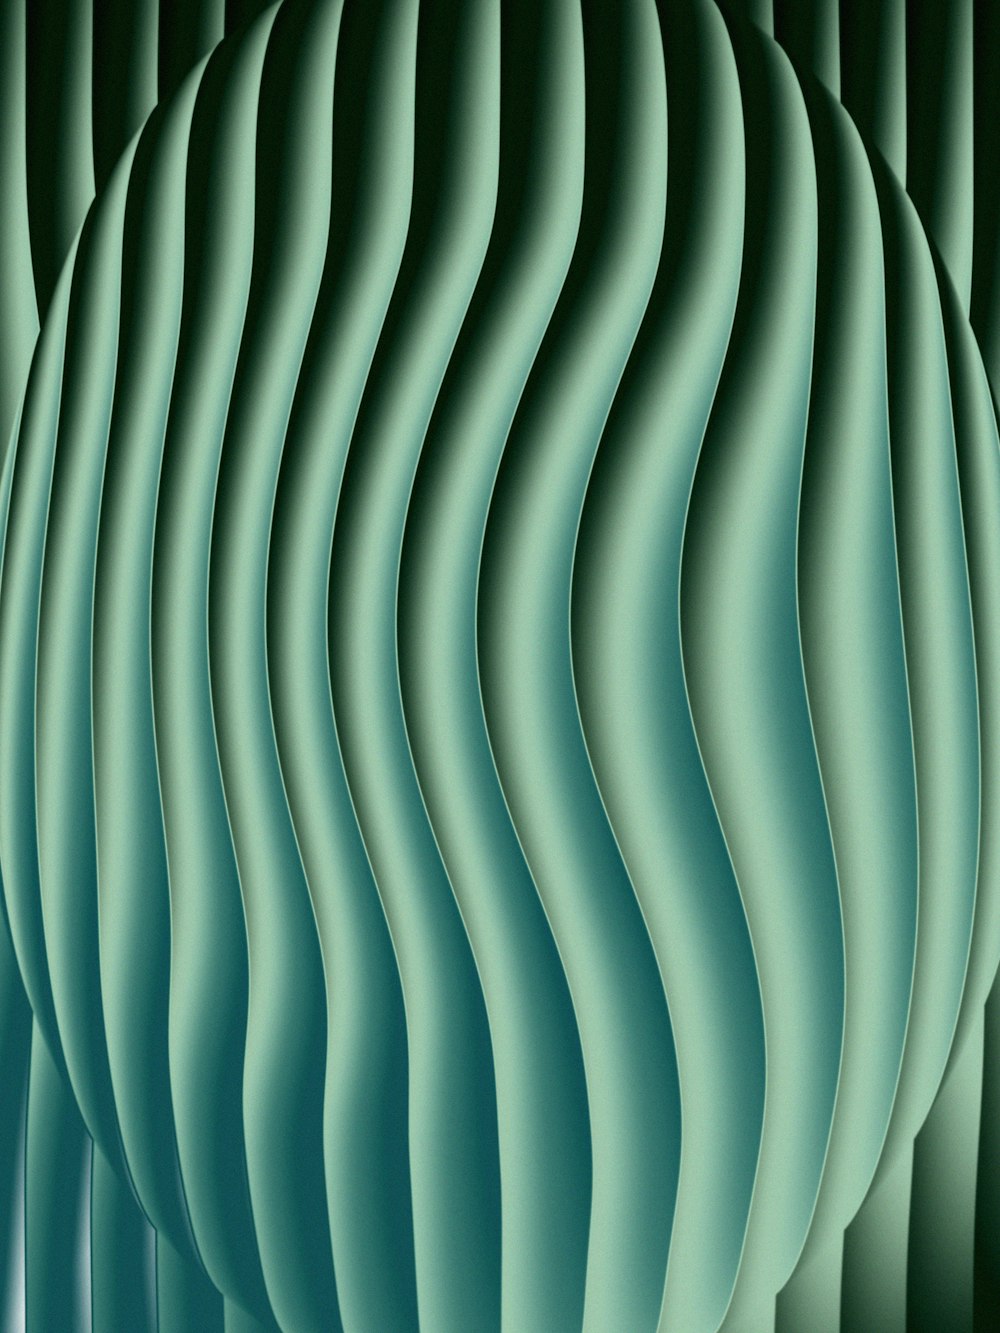 緑の抽象的背景に波線